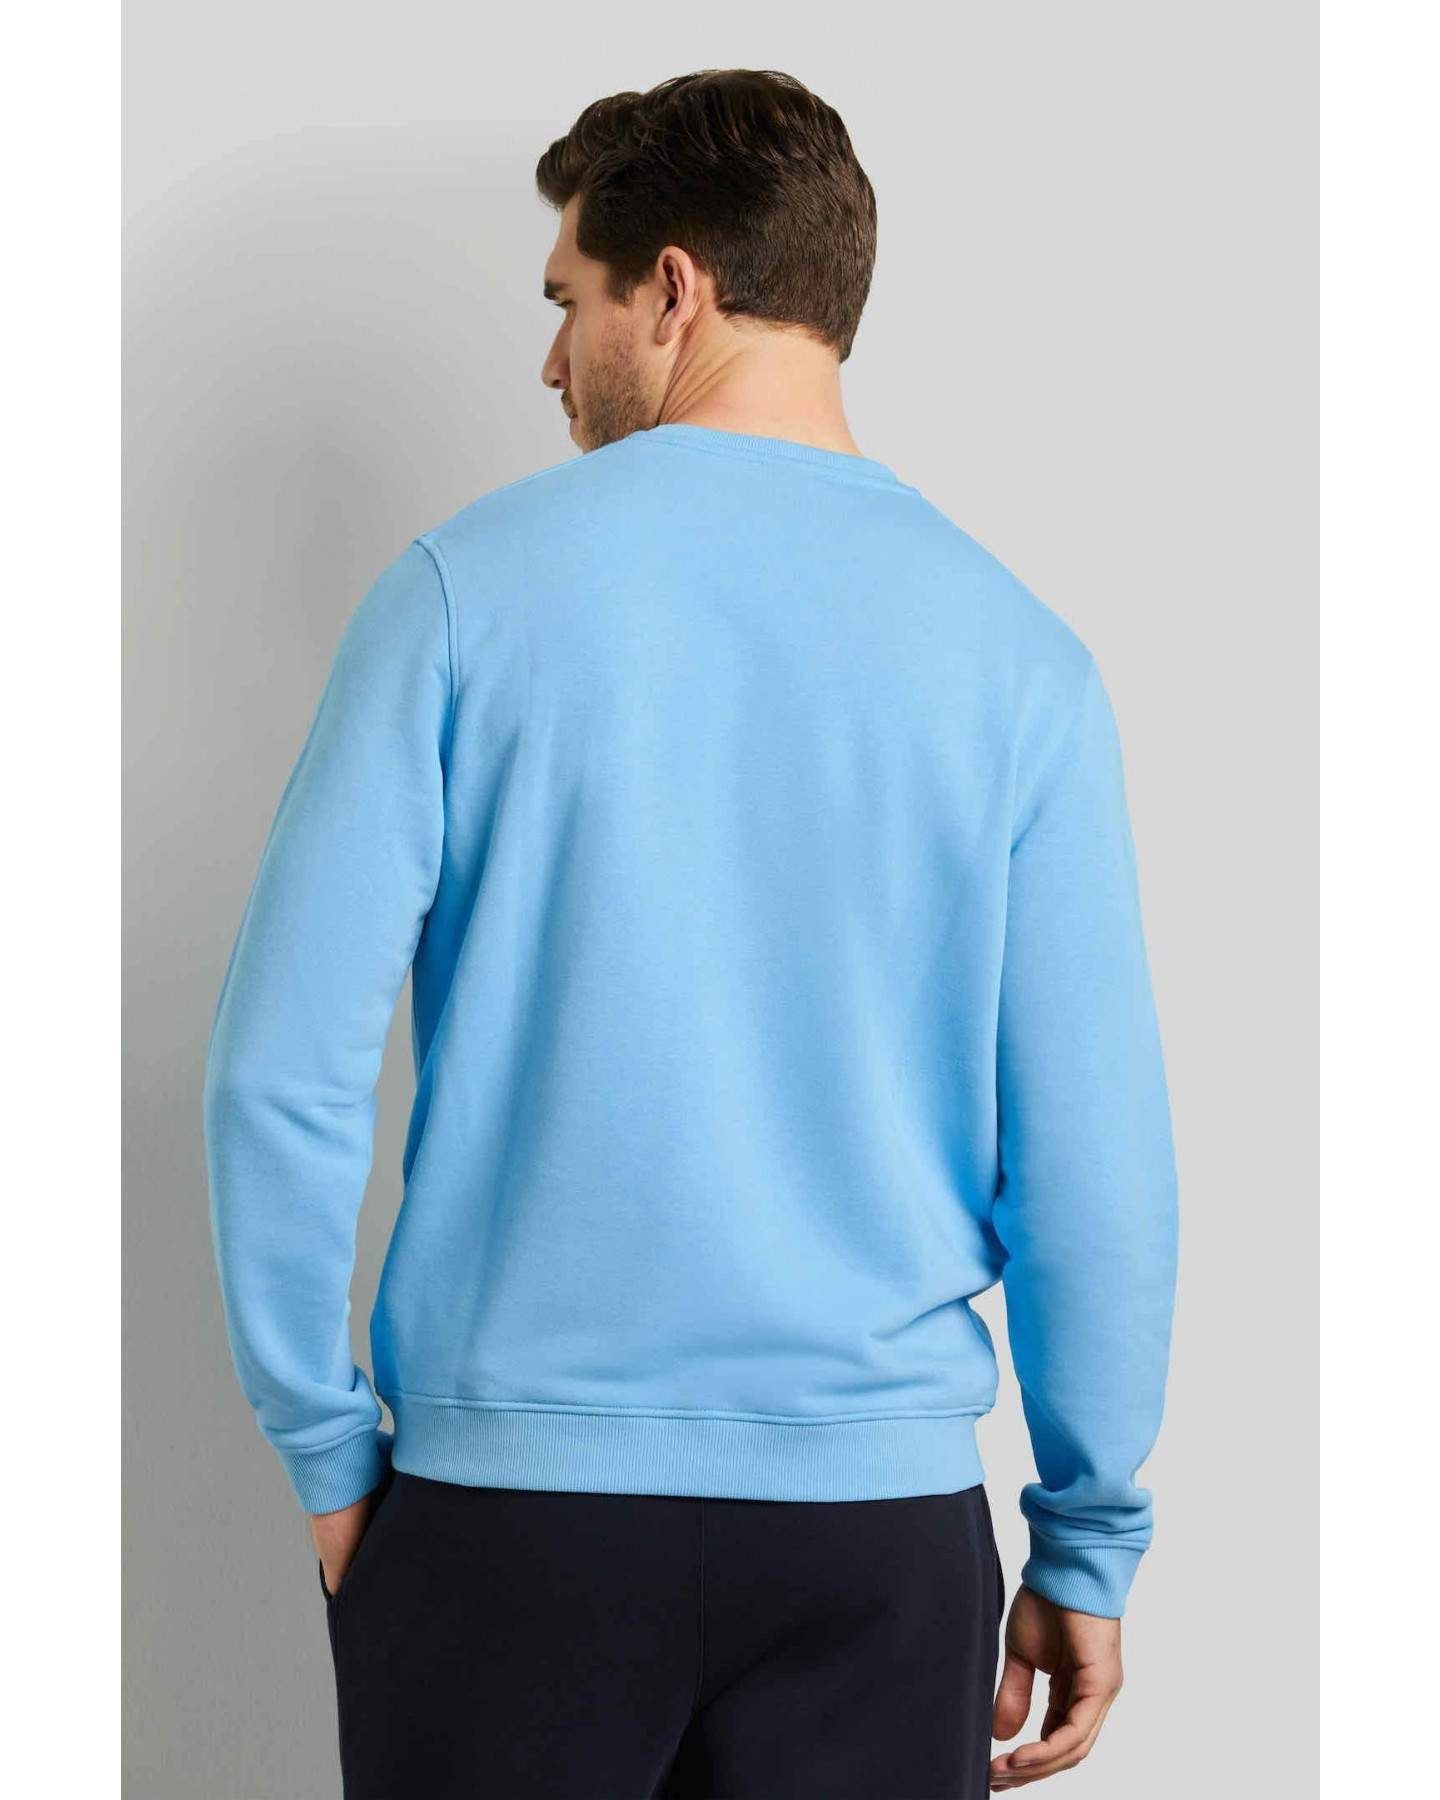 bugatti Sweatshirt 8650-35070 (620) Fit Gelb Hoher Baumwolle, an Modern hochwertiger Anteil